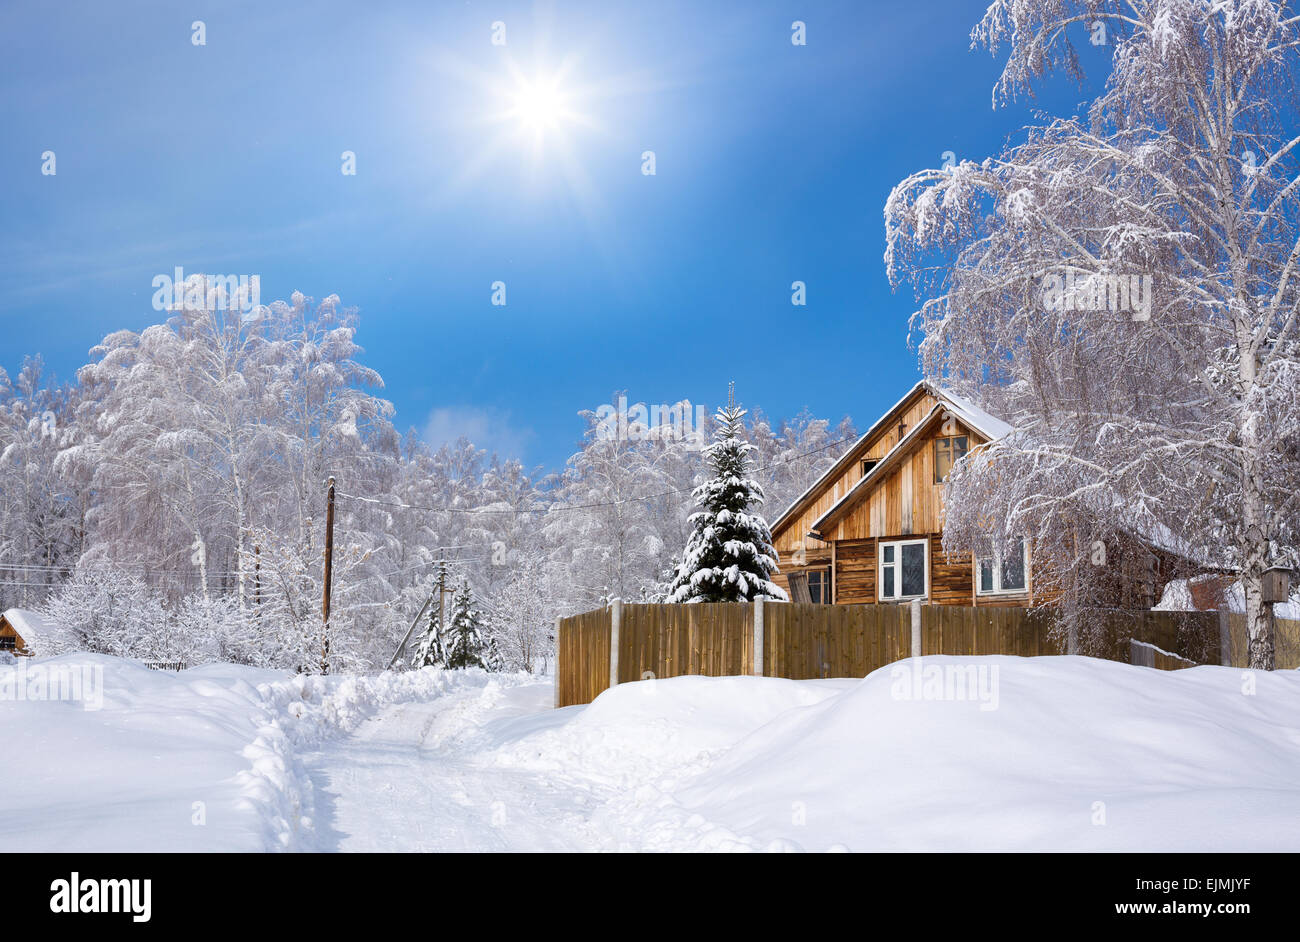 Maison en bois dans la neige de l'hiver sibérien Banque D'Images